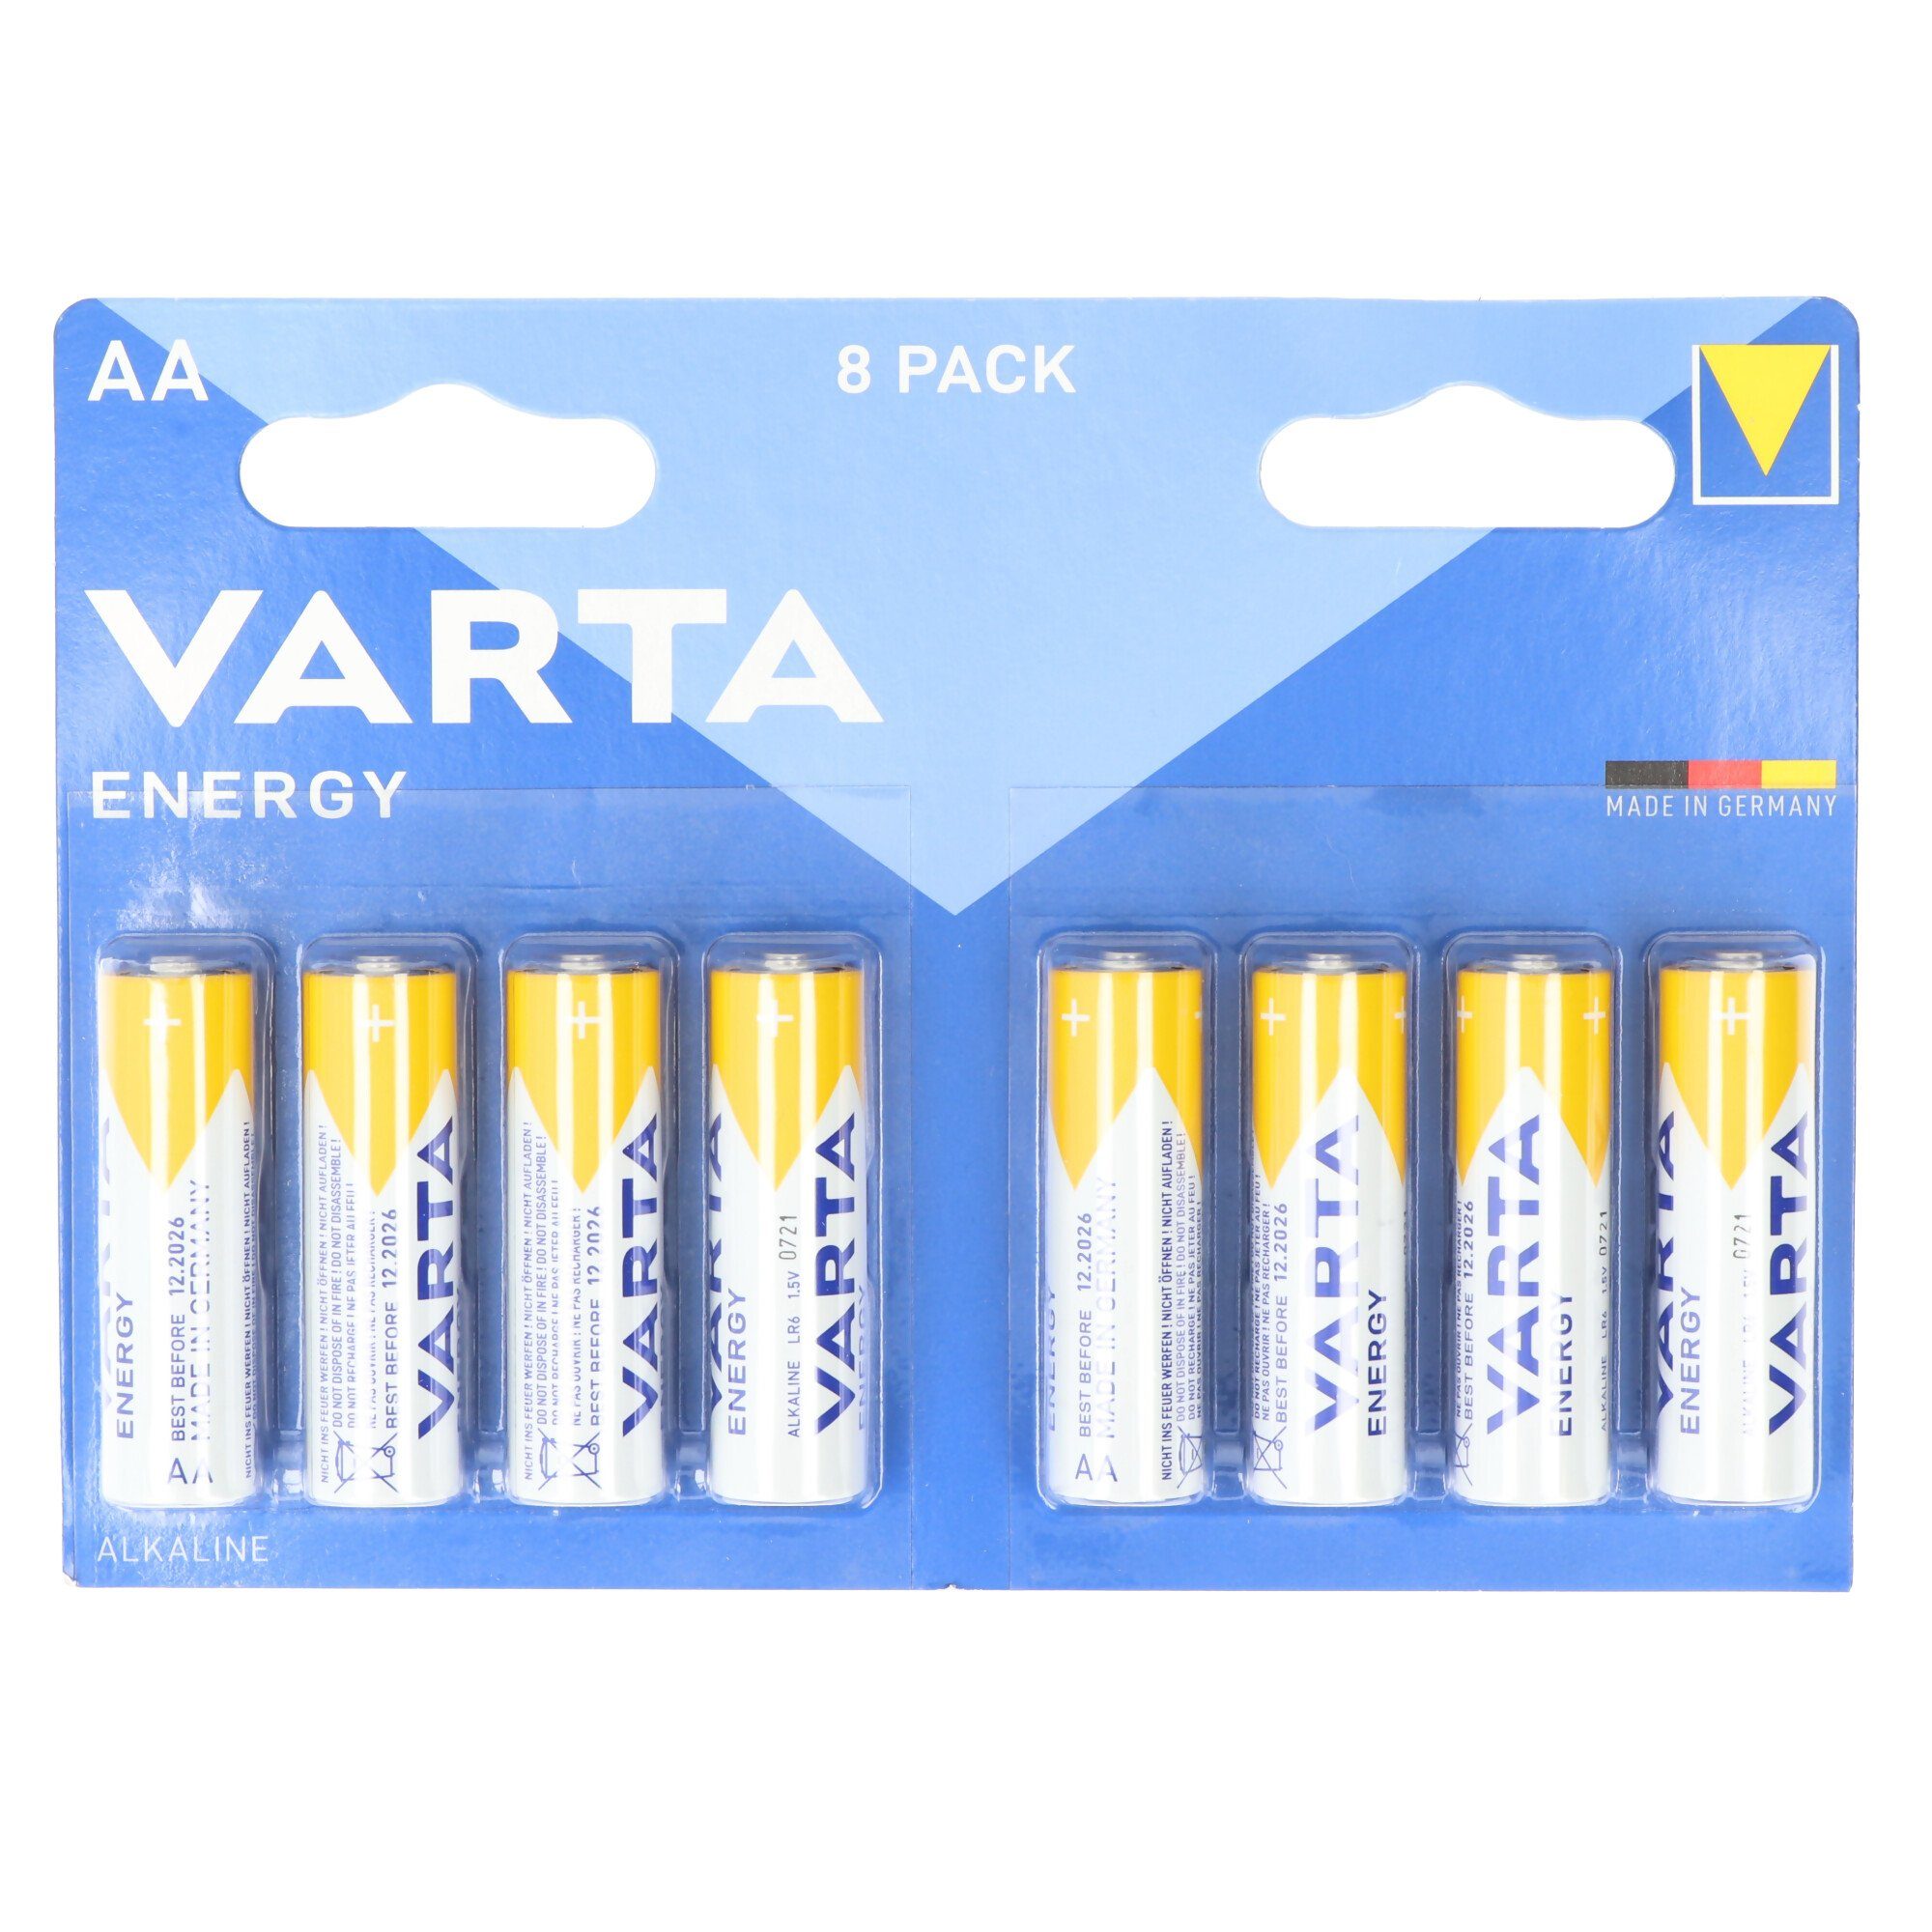 VARTA Varta Batterie V) Energy Pack AA, Alkaline, 1.5V (1,5 LR06, Batterie, 8er Mignon